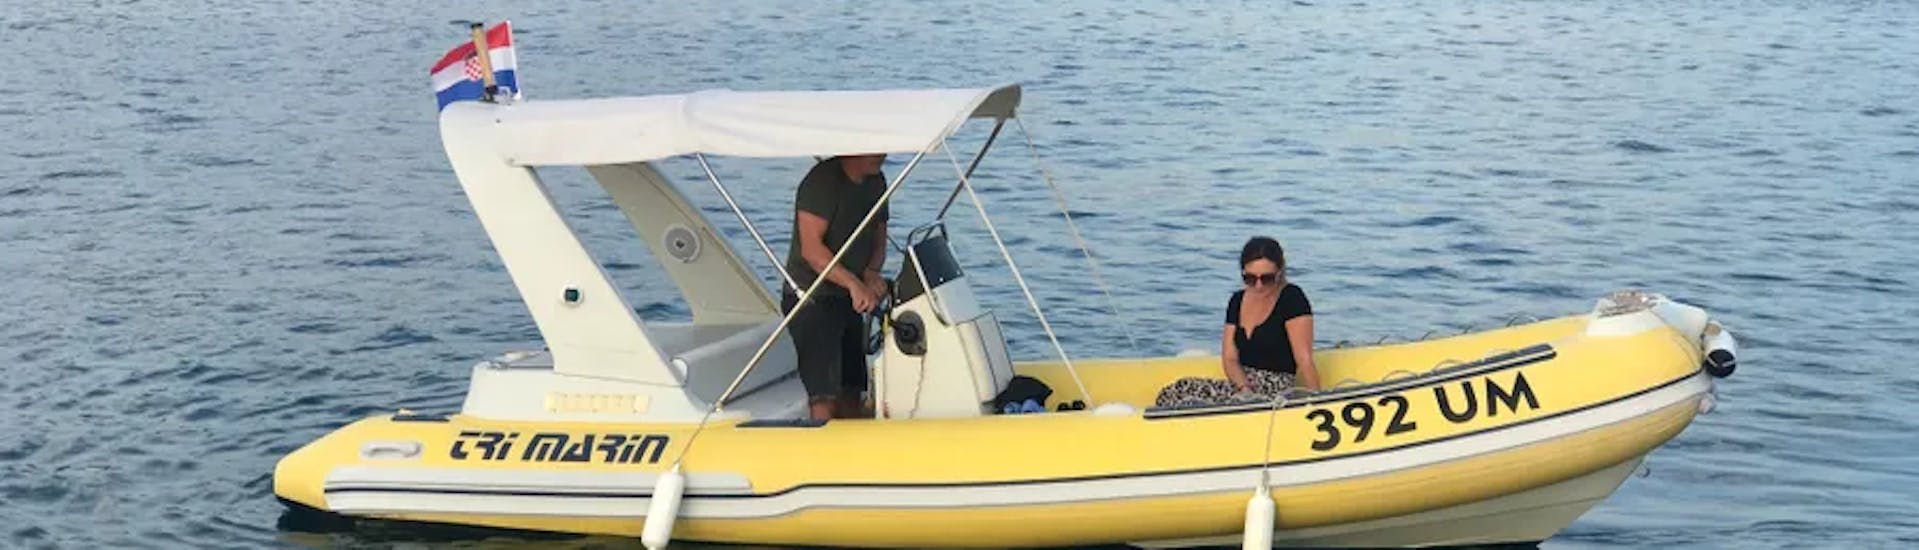 Dos personas en el barco del Alquiler de Barcos con Licencia en Umag (hasta 8 personas) con Action & Fun Umag.